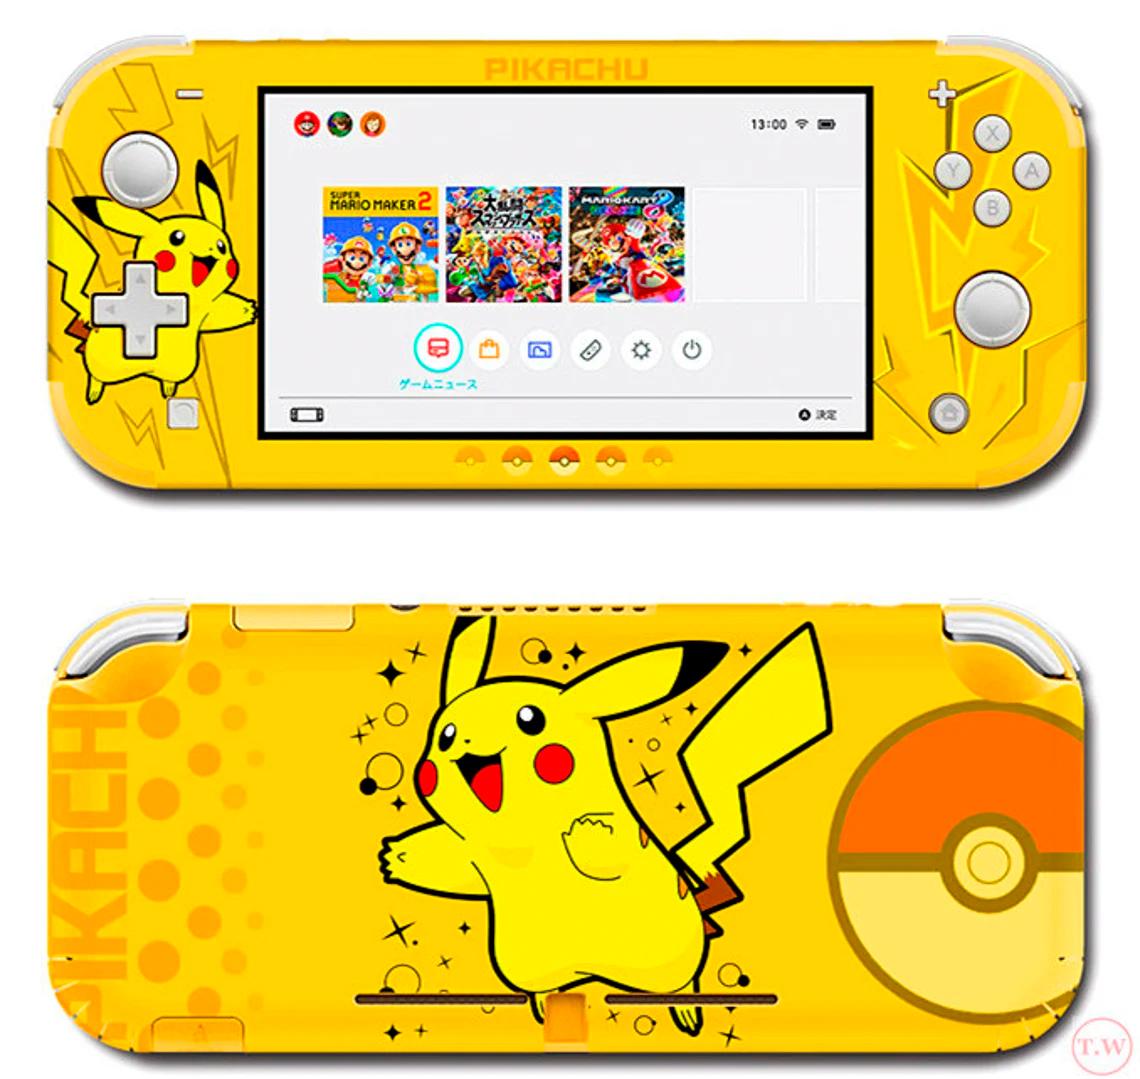 Skin decal dán Nintendo Switch Lite mẫu Pokemon Pikachu nền vàng (dễ dán, đã cắt sẵn)